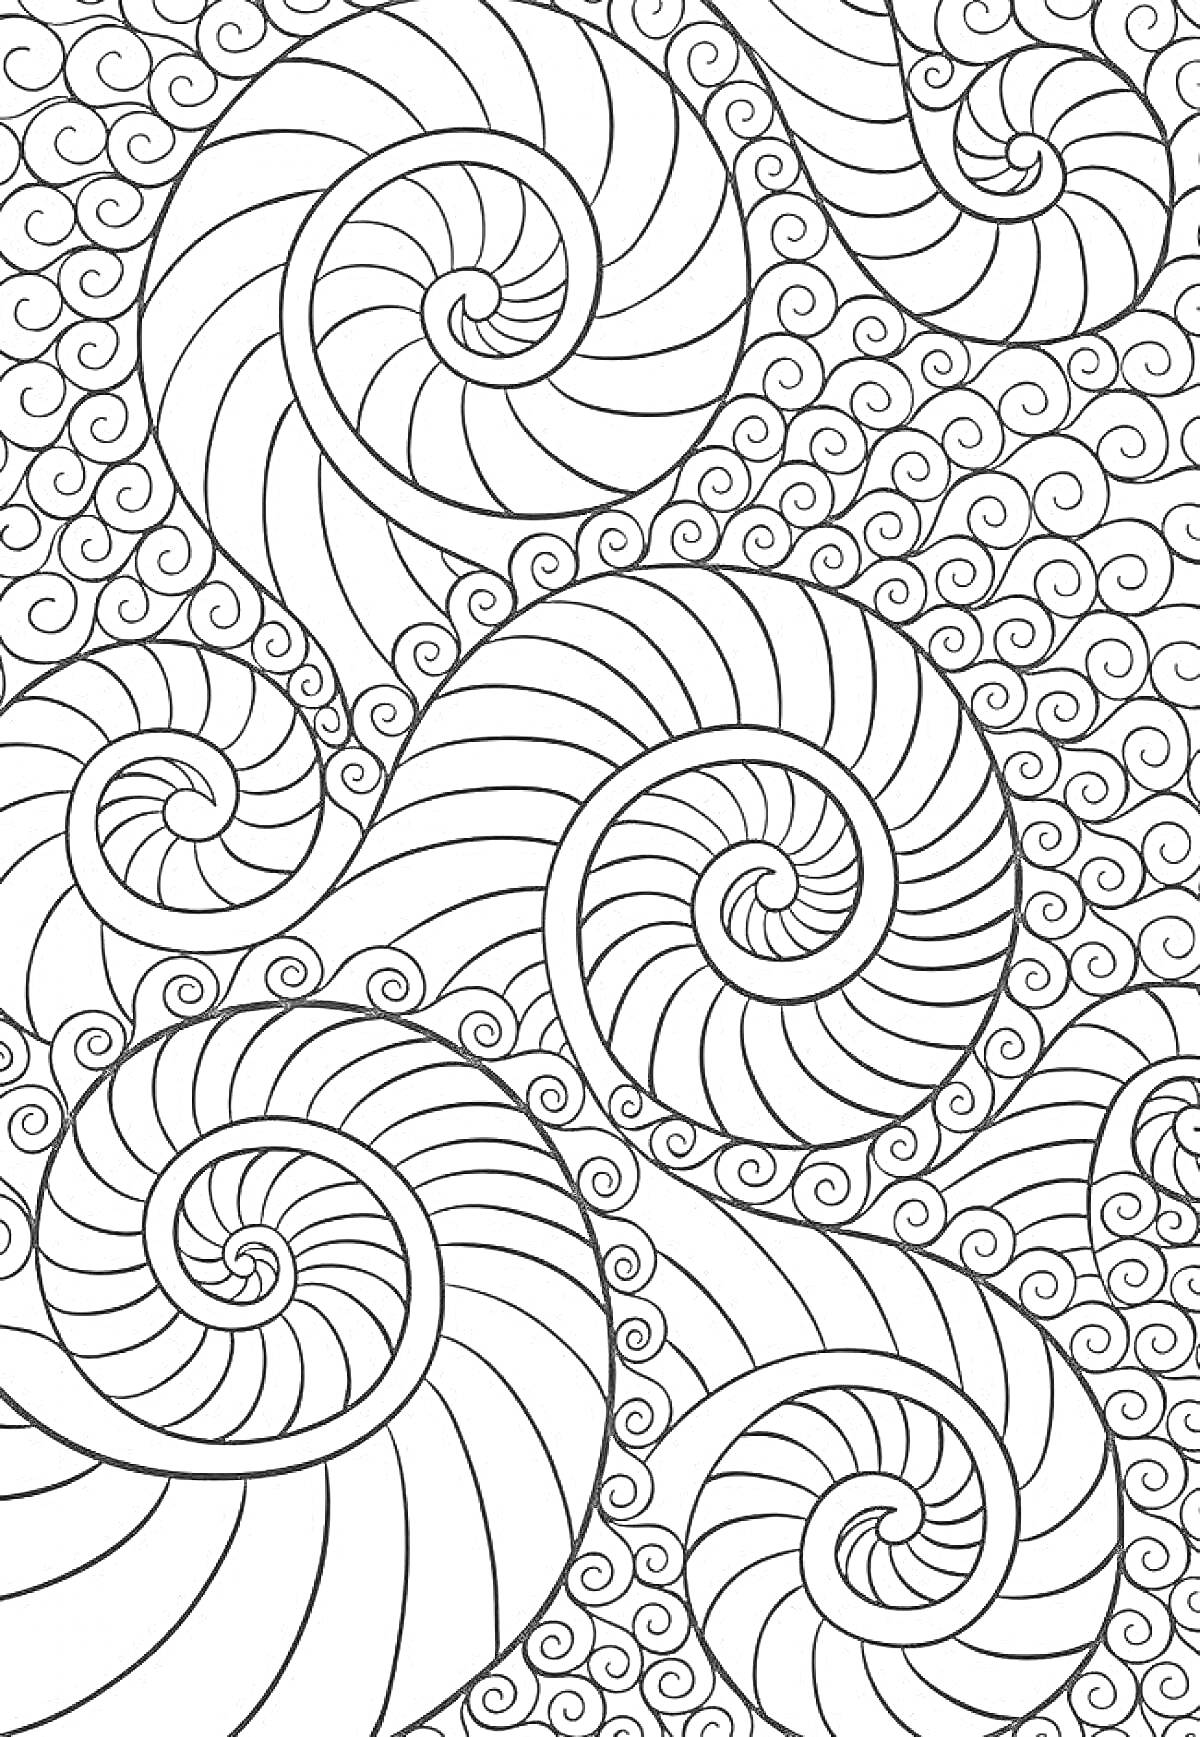 Раскраска Антистресс раскраска с крупными и мелкими спиралями